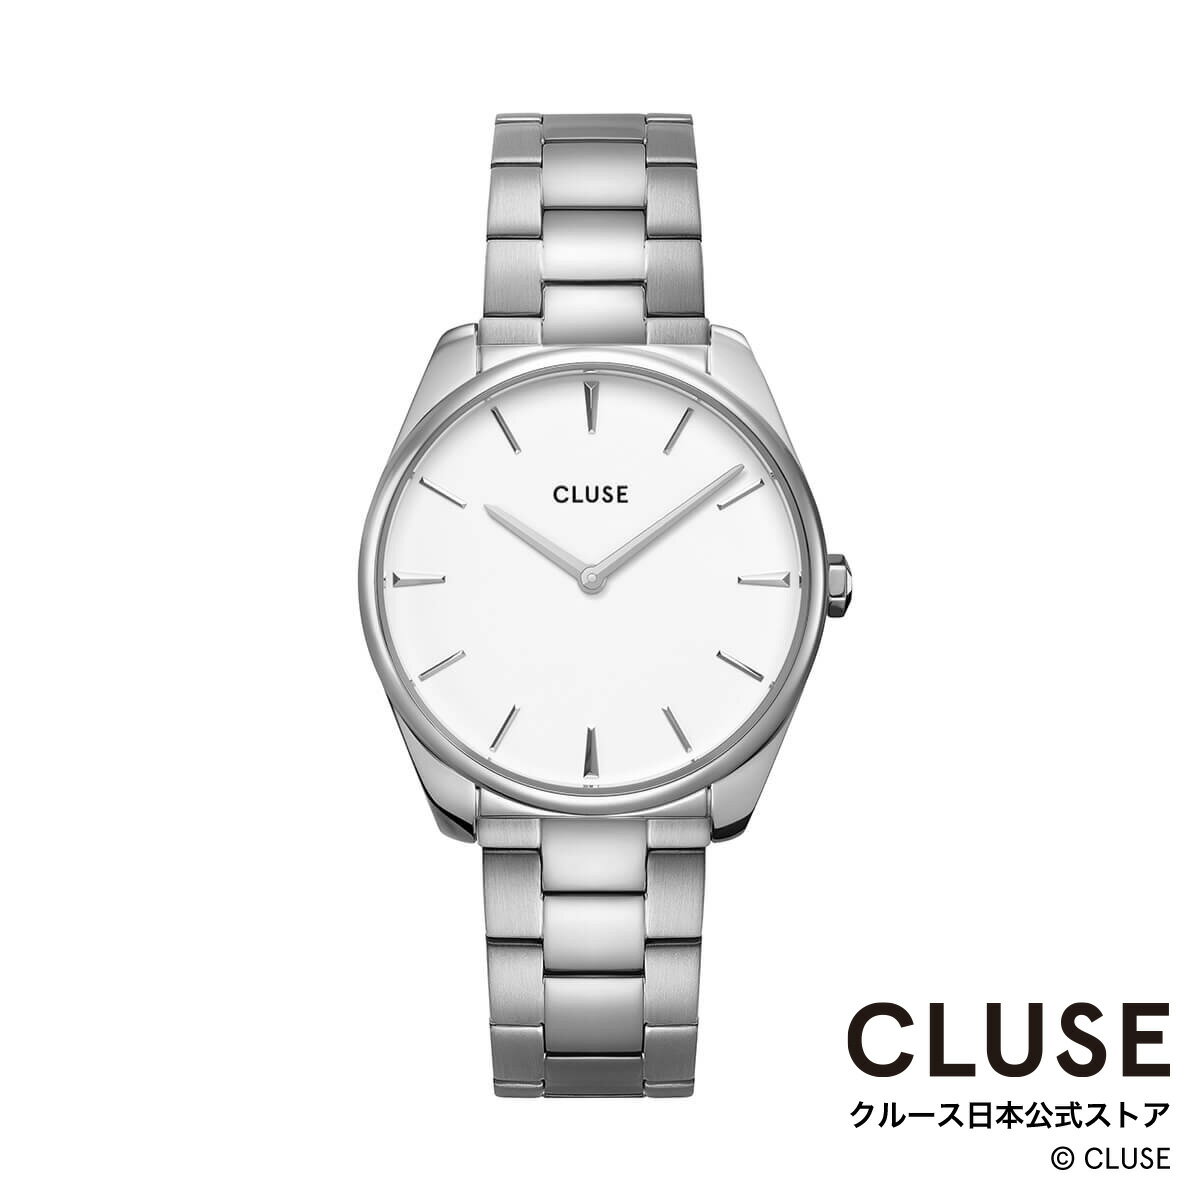 クルース ビジネス腕時計 レディース クルース CLUSE 日本公式ストア フェローチェ 3リンク シルバー ホワイト シルバー レディース 女性 腕時計 時計 防水 クォーツ